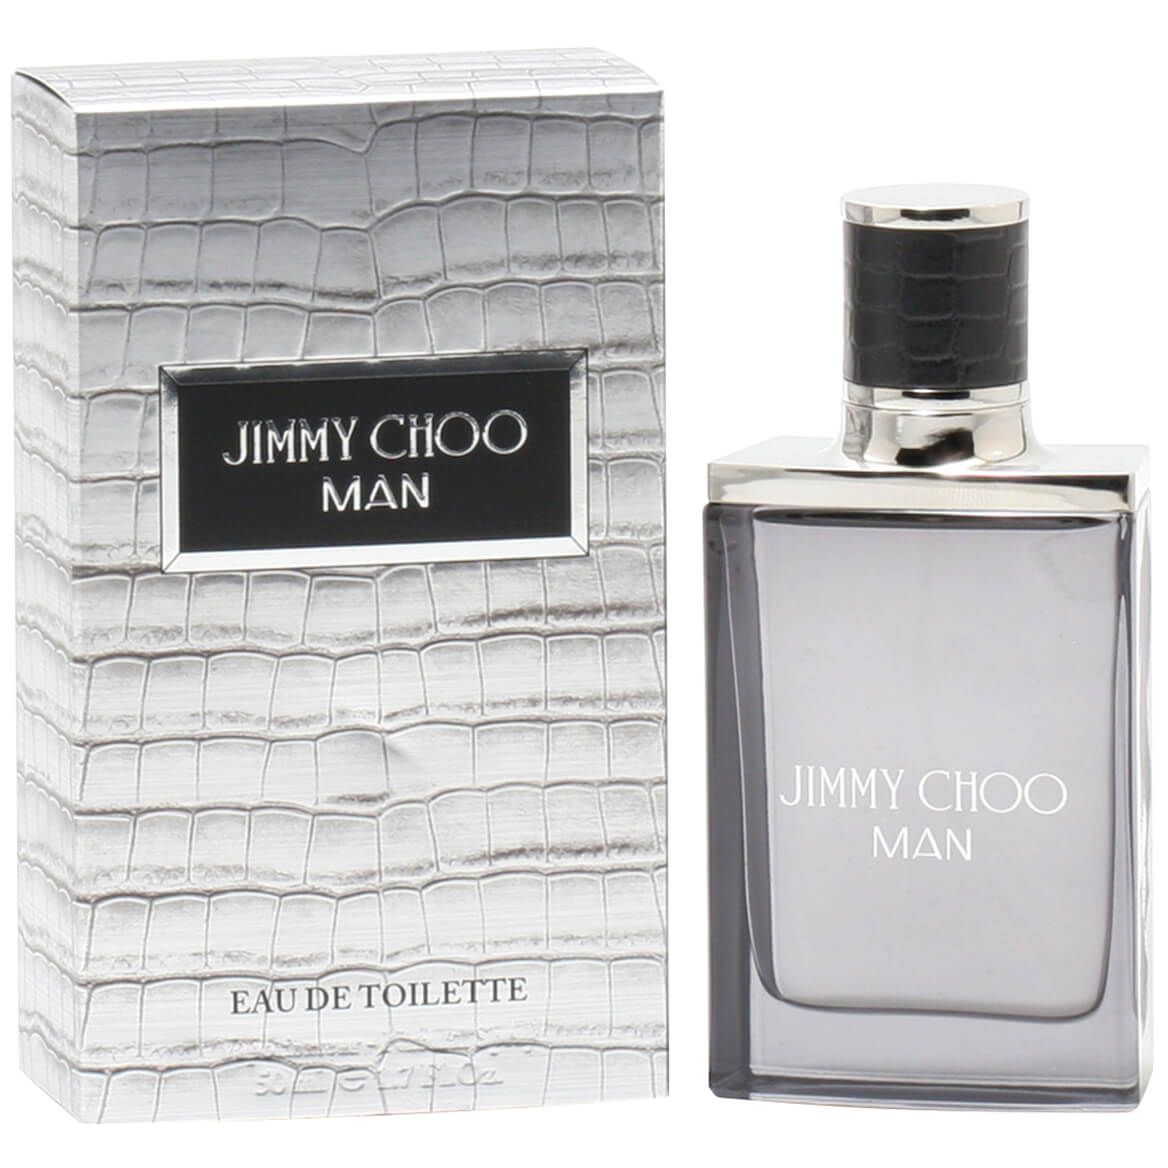 Jimmy Choo Man for Men EDT, 1.7 oz. + '-' + 366854